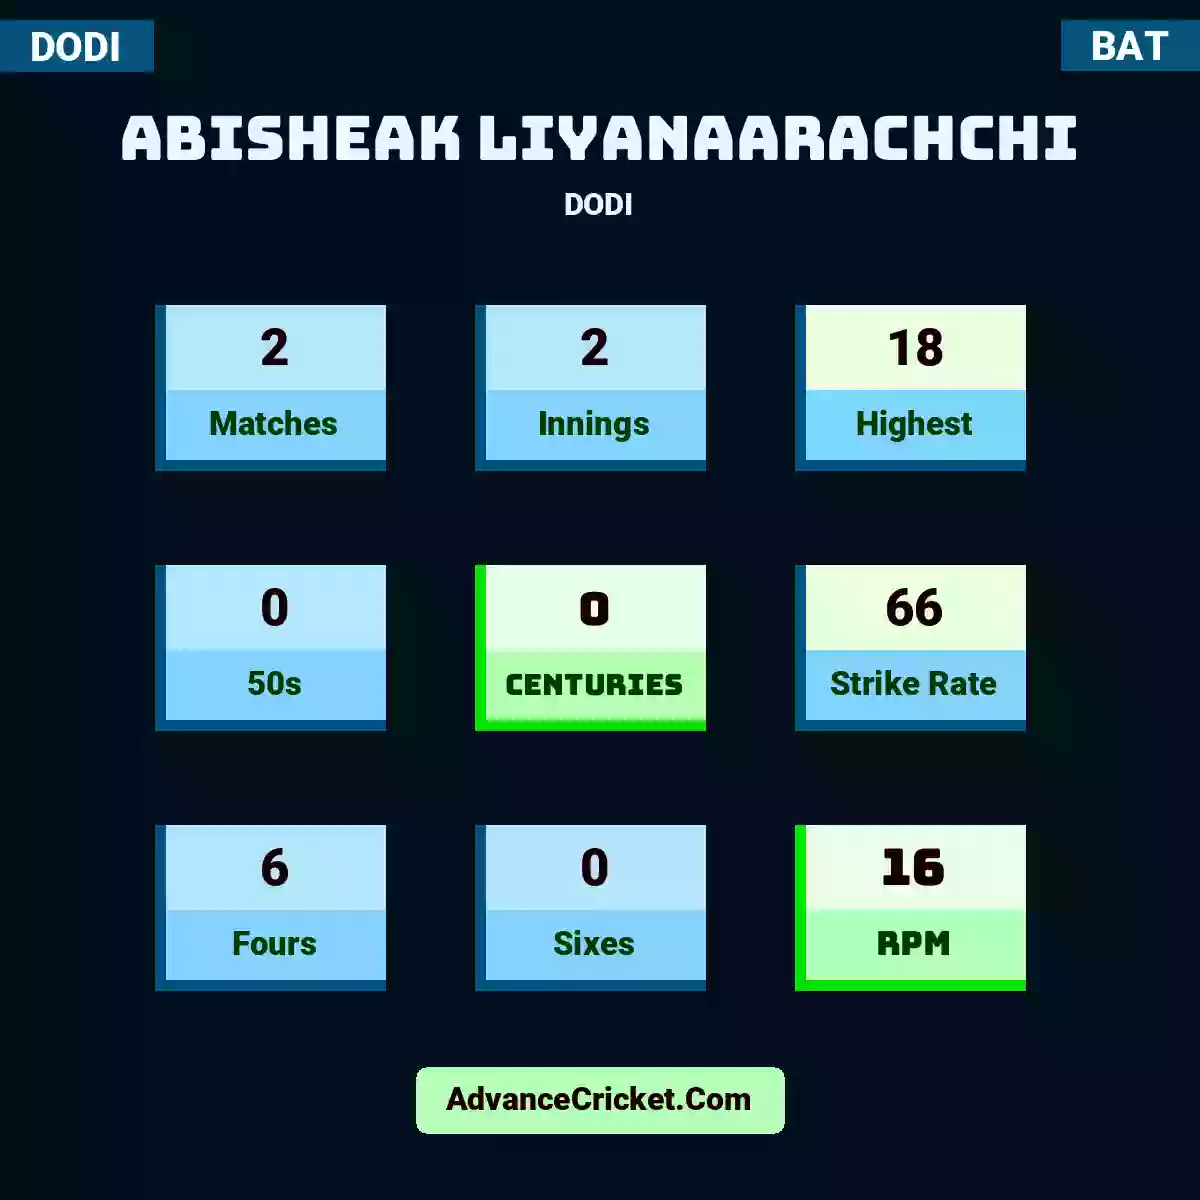 Abisheak Liyanaarachchi DODI , Abisheak Liyanaarachchi played 2 matches, scored 18 runs as highest, 0 half-centuries, and 0 centuries, with a strike rate of 66. A.Liyanaarachchi hit 6 fours and 0 sixes, with an RPM of 16.